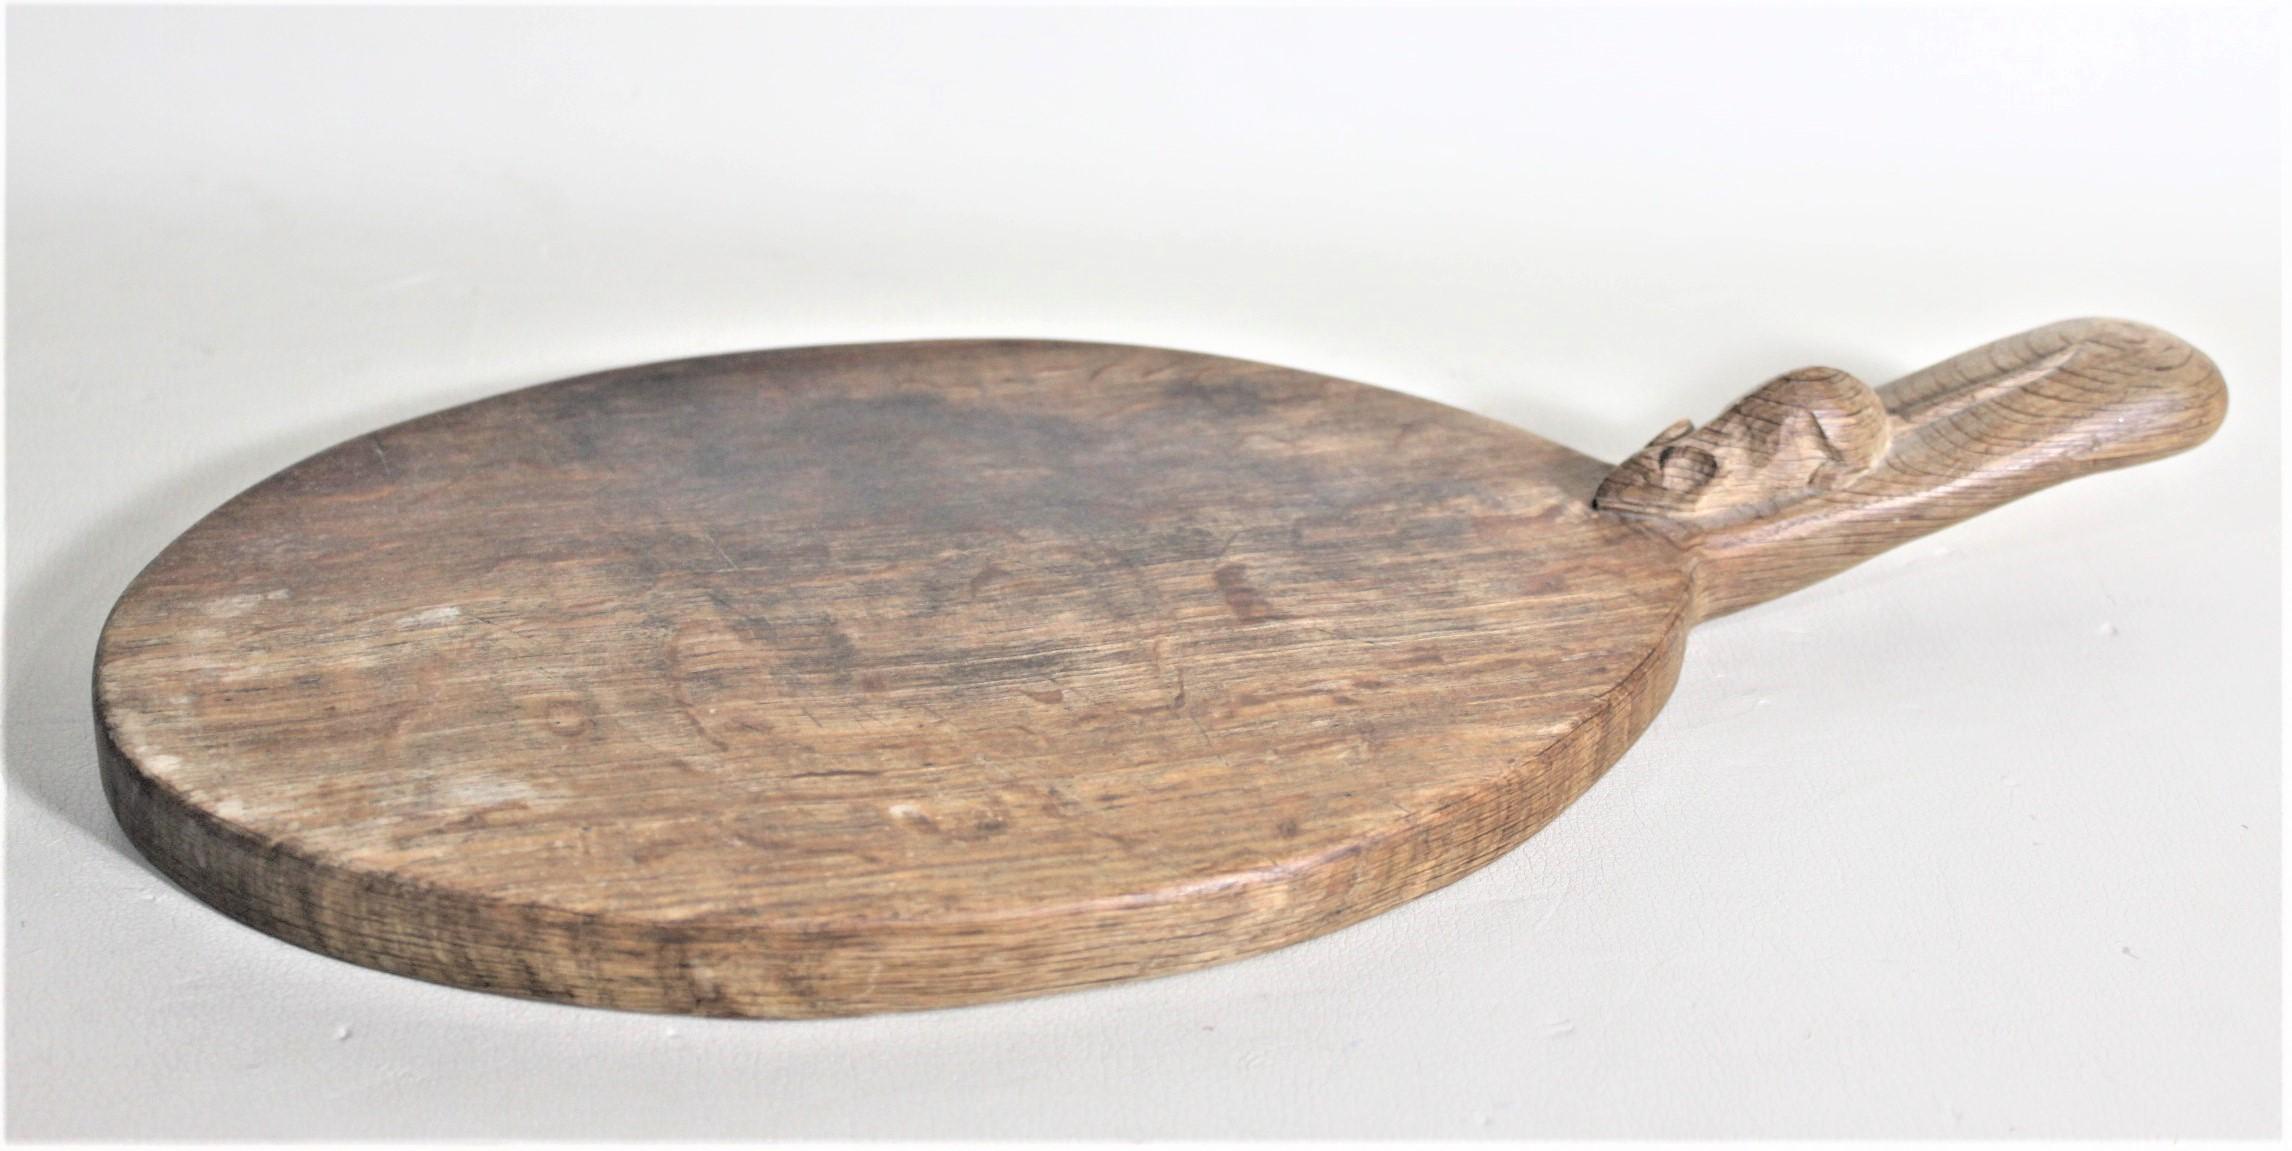 Cette planche à découper ovale en chêne massif a été fabriquée par le célèbre fabricant de meubles anglais Robert 